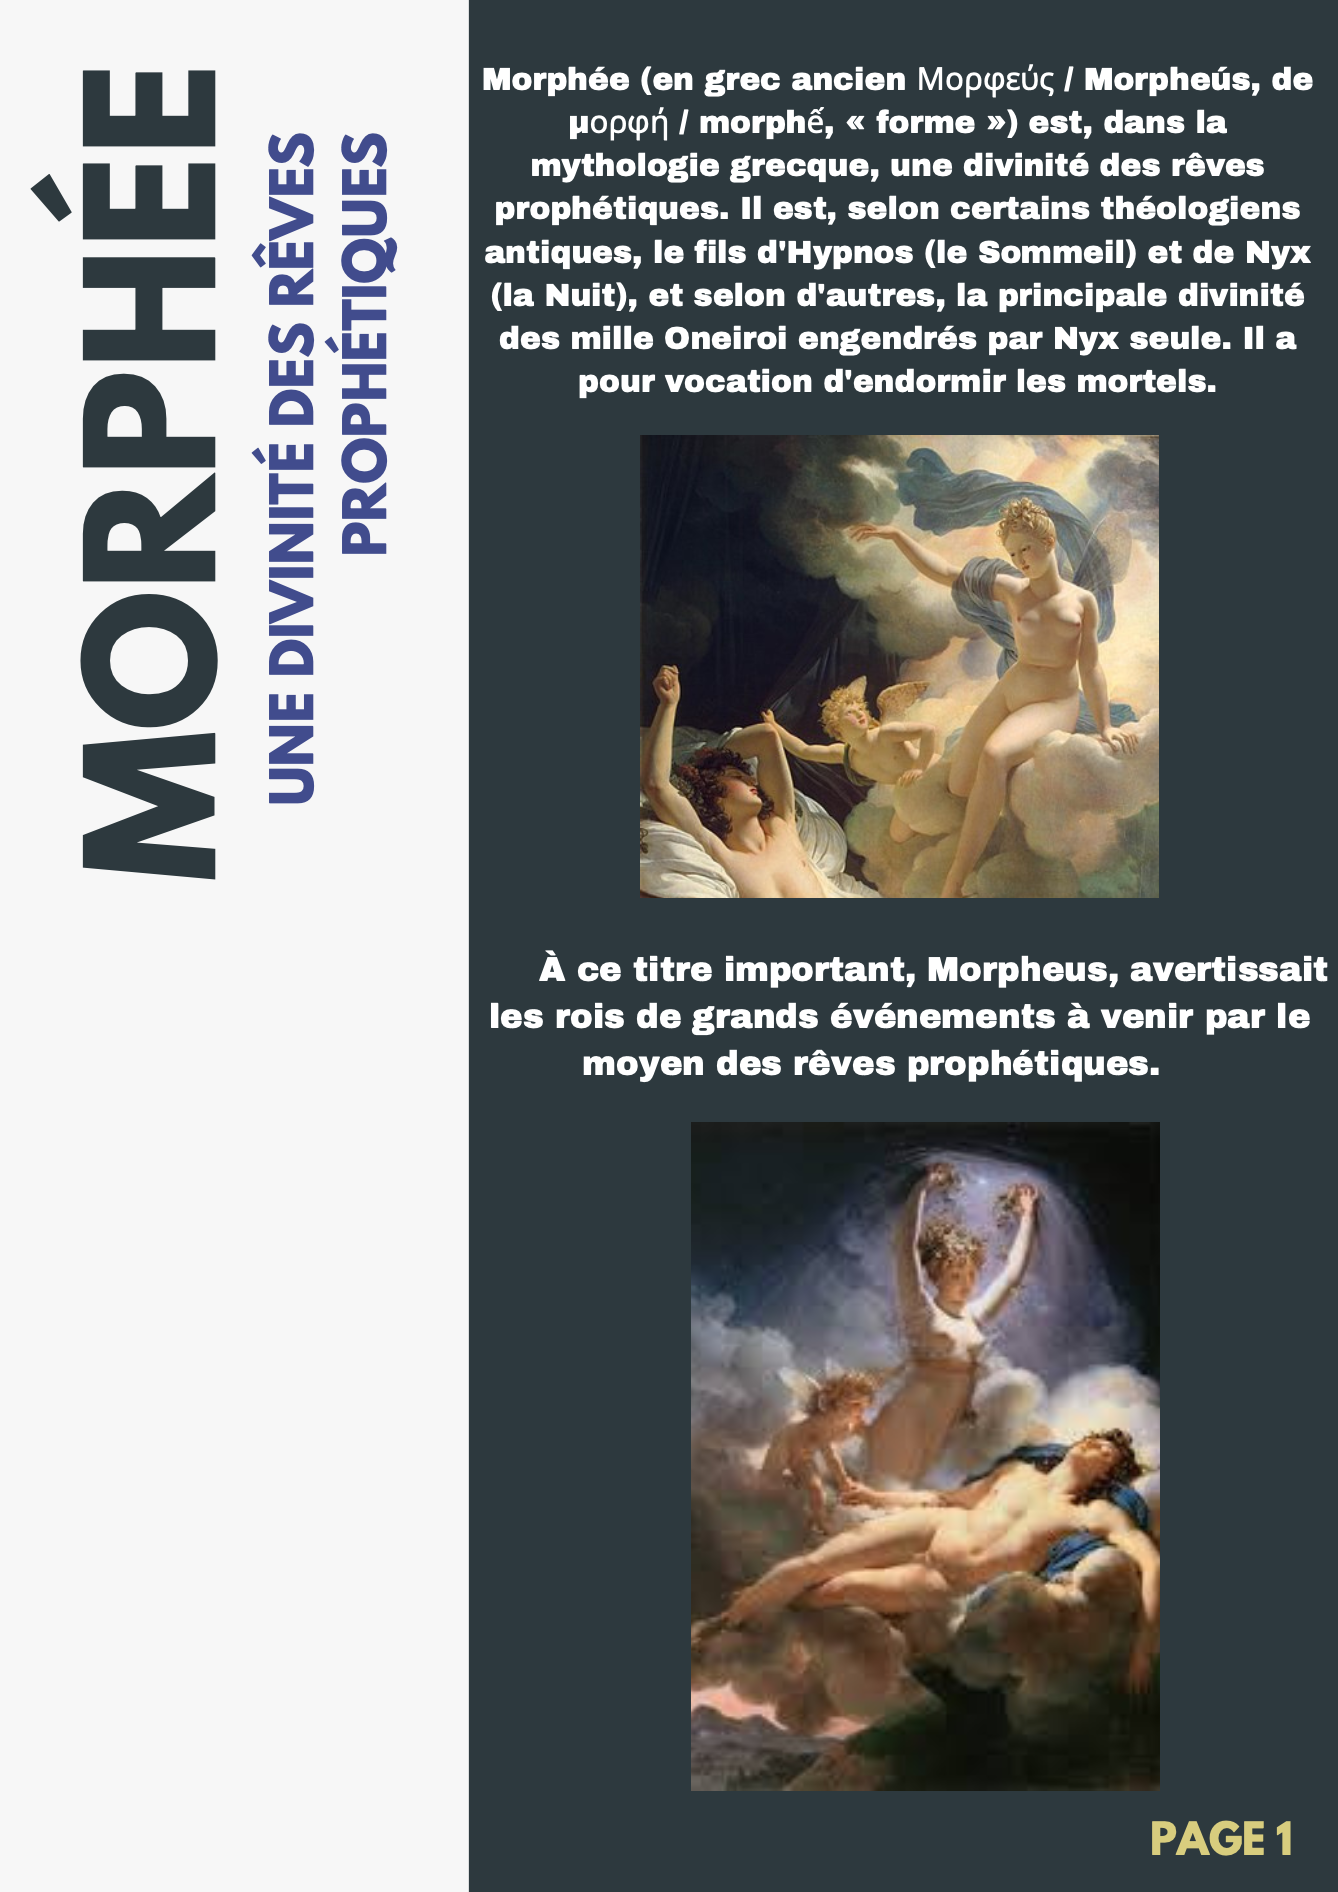 Mythologie grecque: Morphée